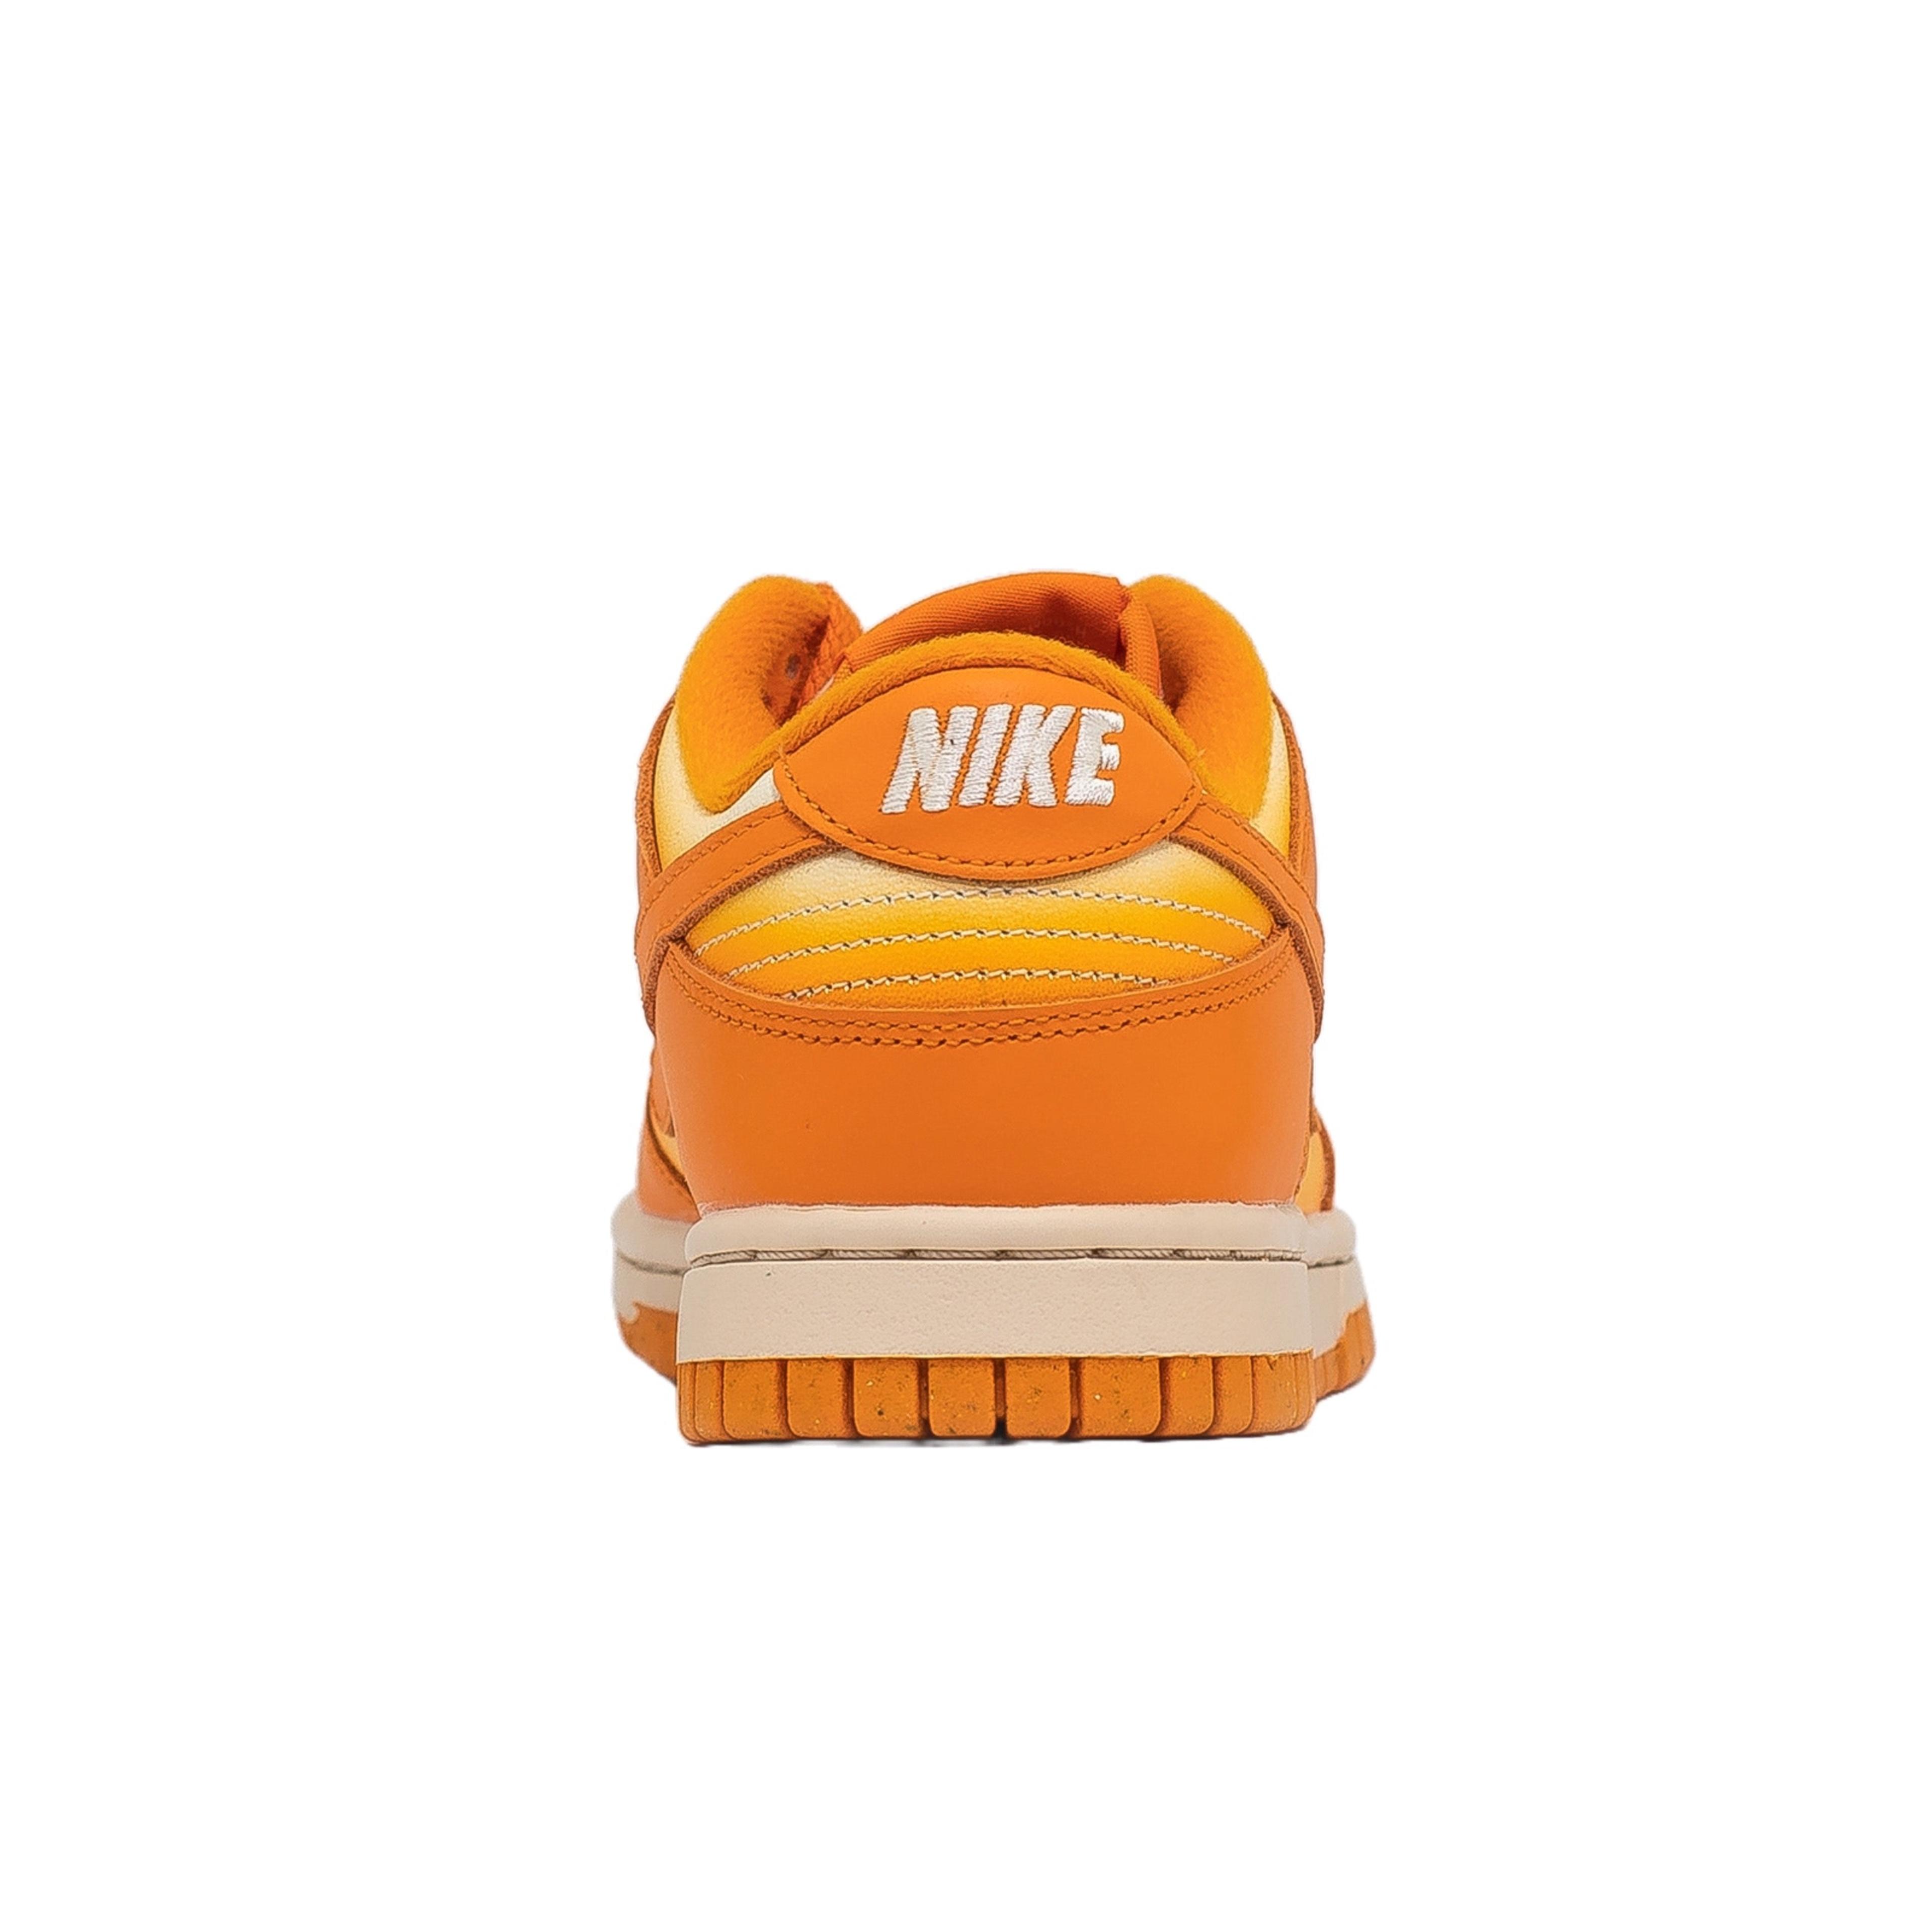 Alternate View 2 of Women's Nike Dunk Low, Magma Orange